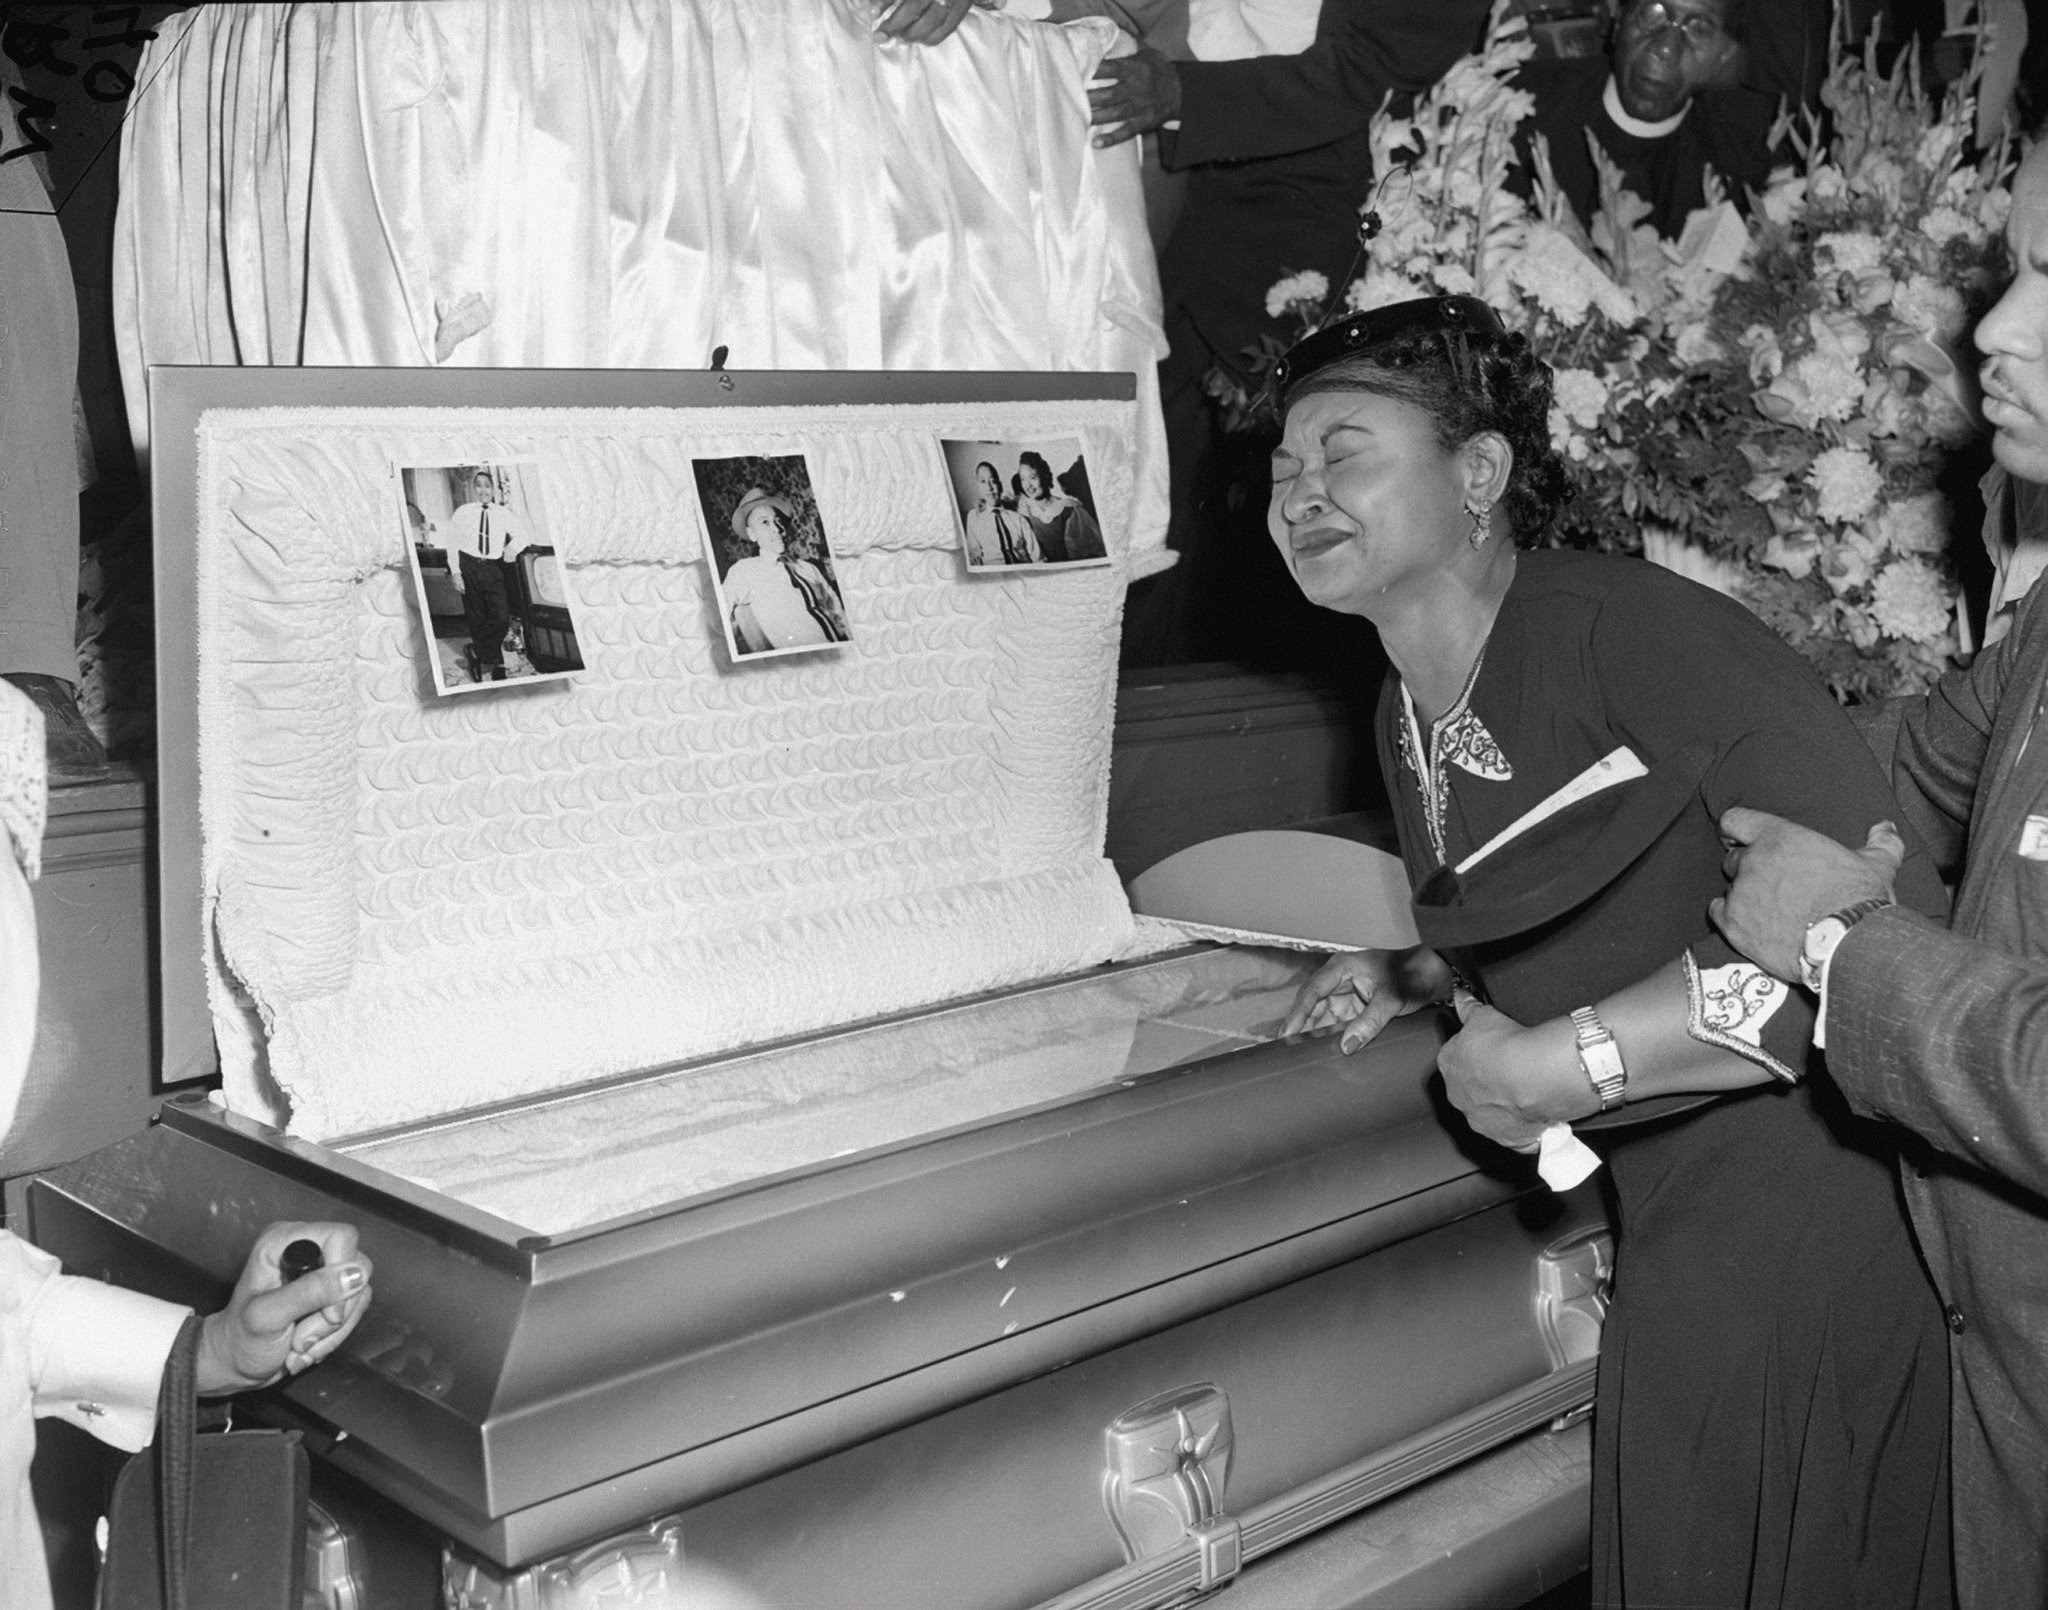 Mamie Till at Emmett's funeral